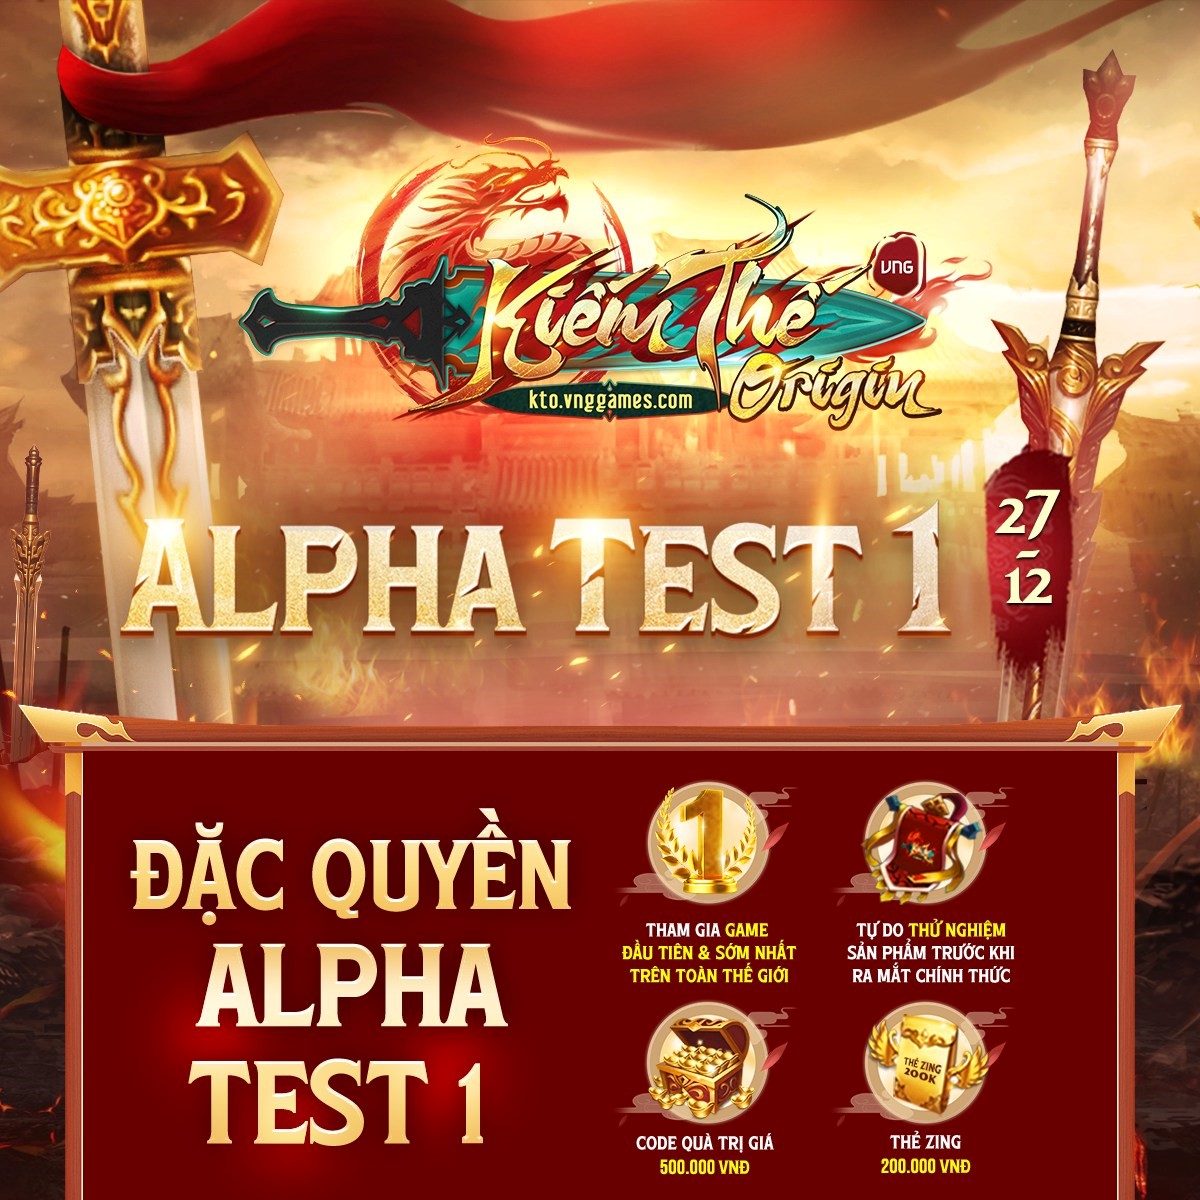 Trải nghiệm Alpha Test 1 Kiếm Thế Origin - Tựa game tái hiện nguyên bản Kiếm Thế từ nền tảng PC lên Mobile